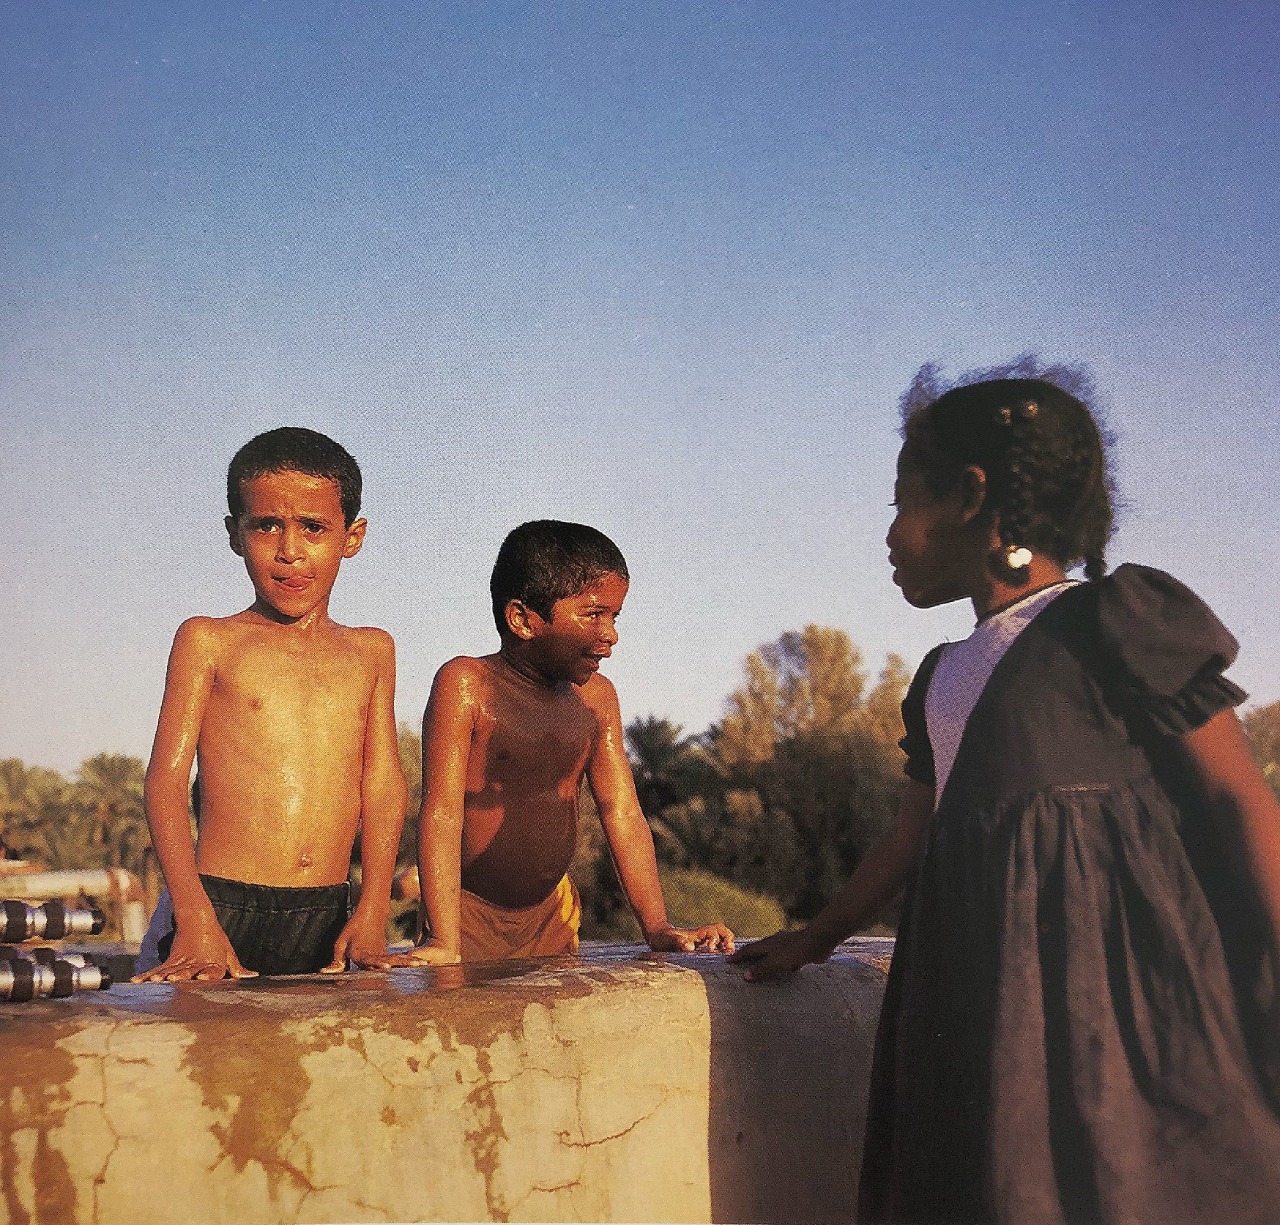 أطفال يسبحون بإحدى المزارع قرب الرياض عام 1411هـ